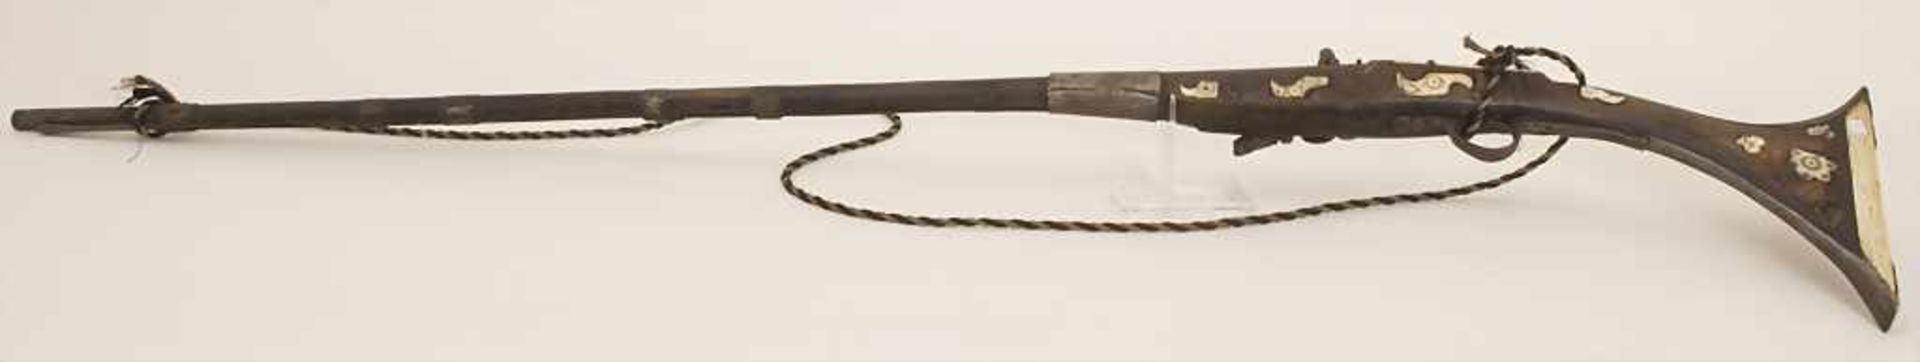 Steinschlossgewehr / A flintflock musket, Nordafrika, 19. Jh.Material: Hartholz, Eisen,